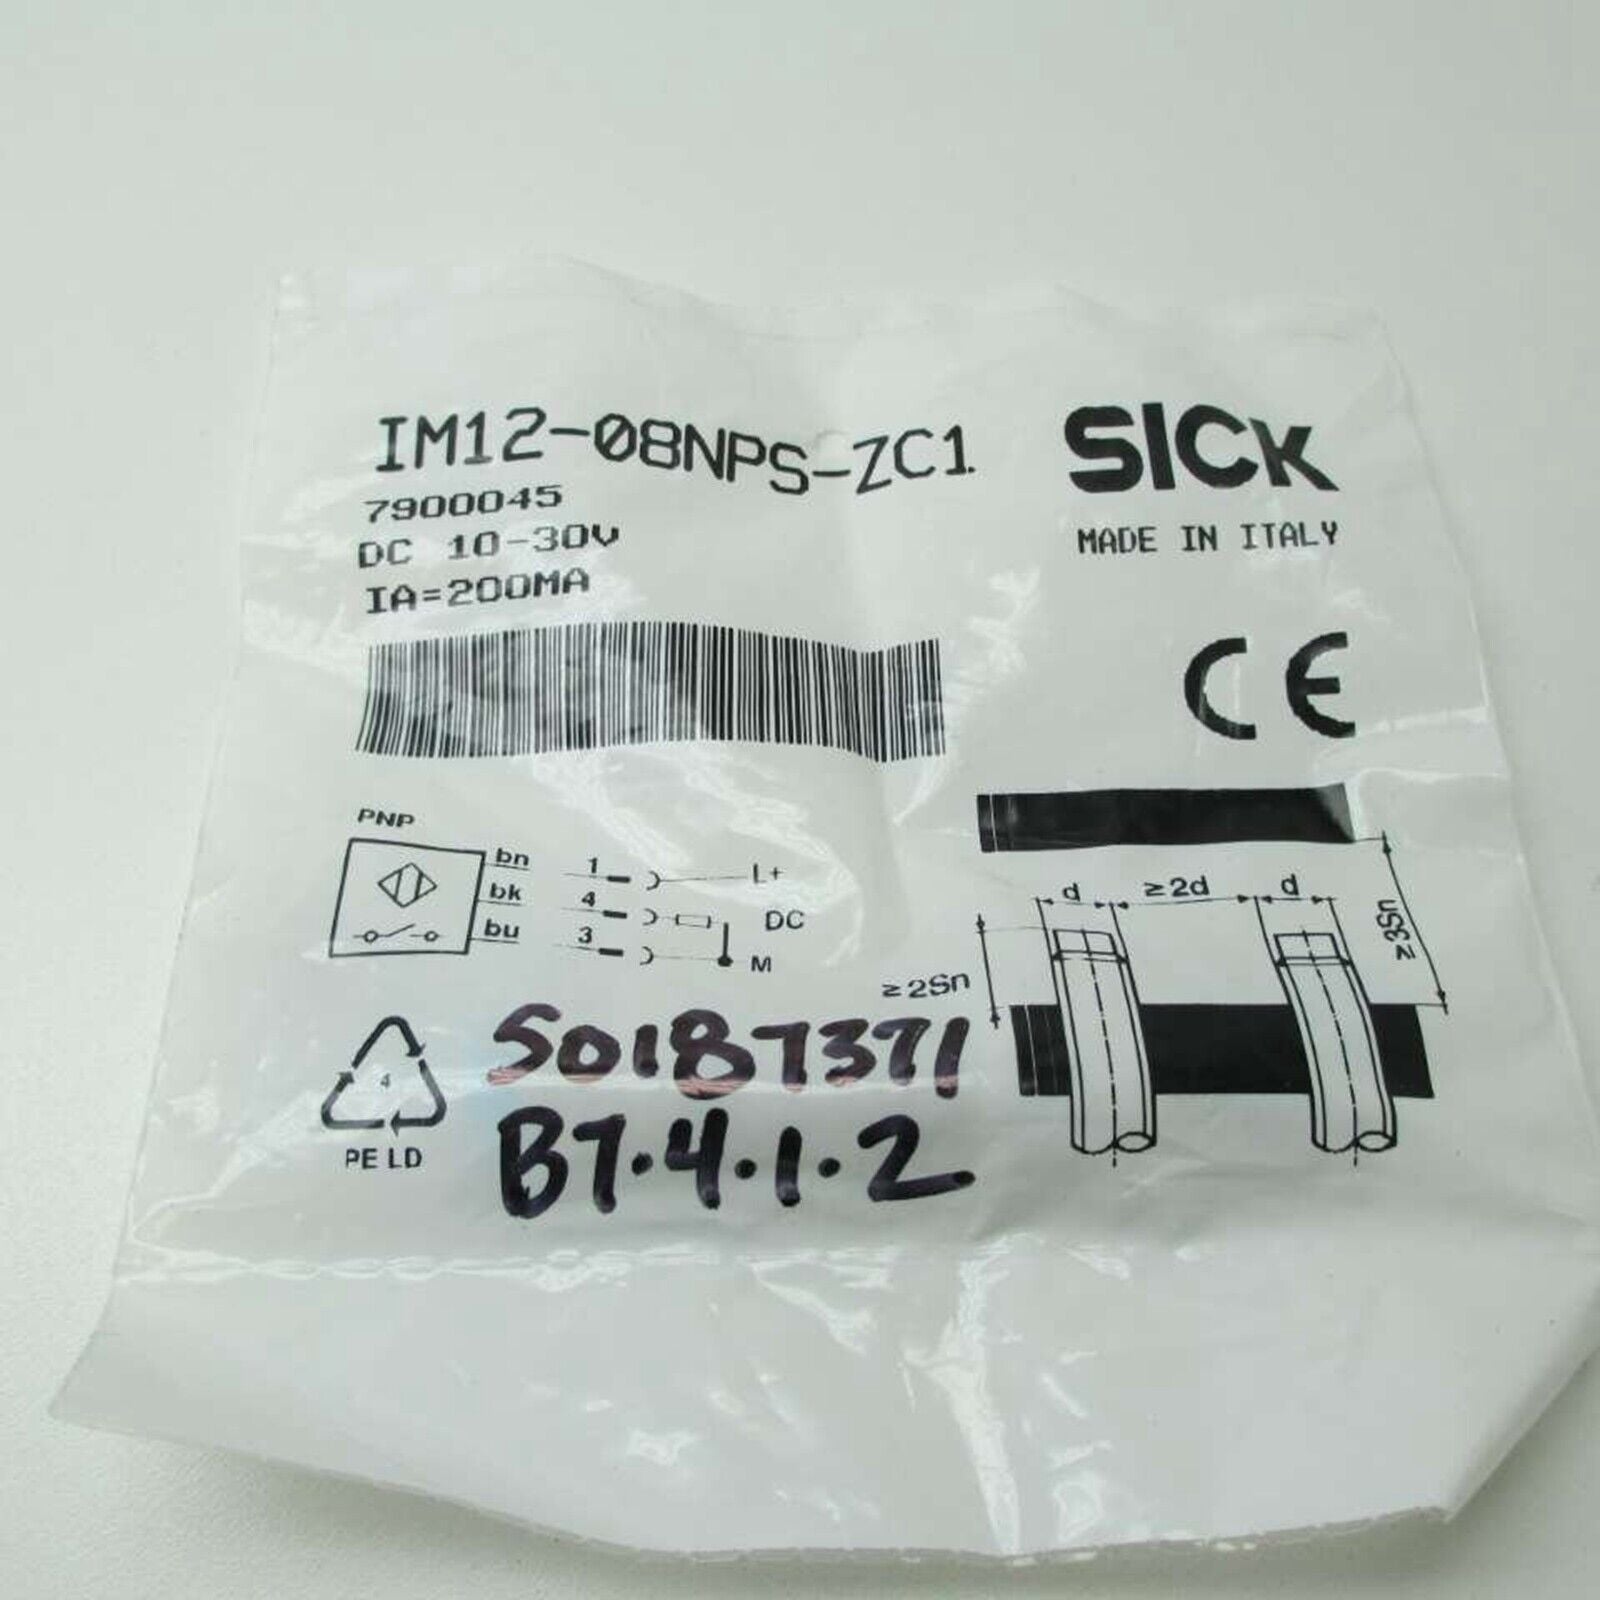 SICK IM12-08NPS-ZC1 7900045 Proximity Switch Sensor